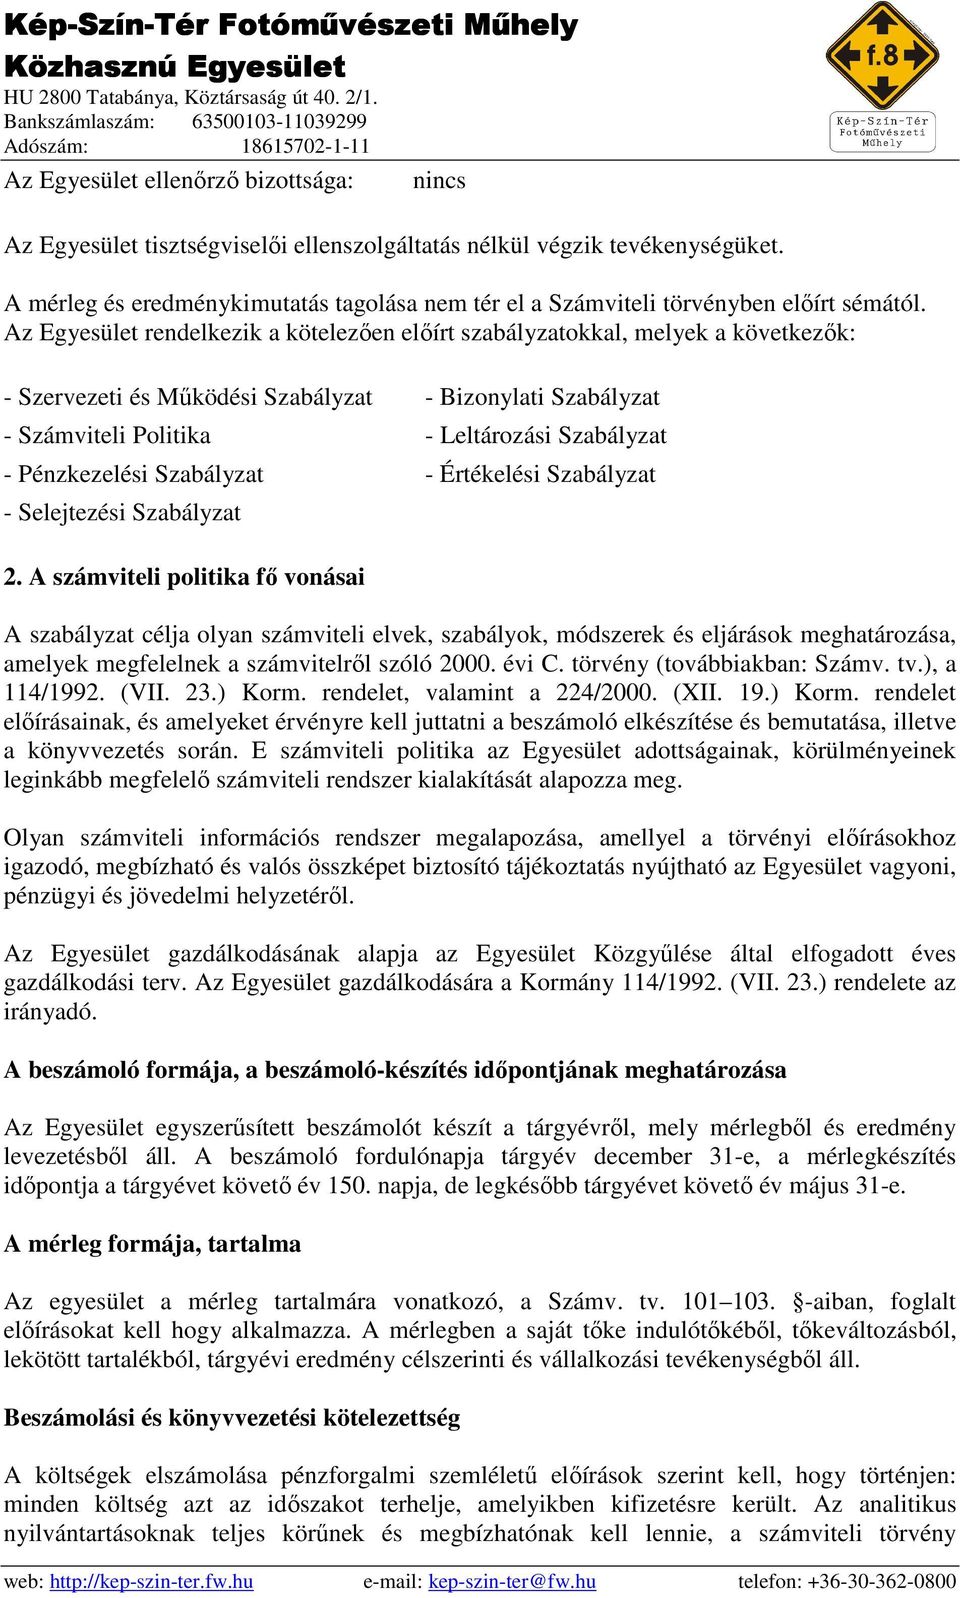 Az Egyesület rendelkezik a kötelezıen elıírt szabályzatokkal, melyek a következık: - Szervezeti és Mőködési Szabályzat - Bizonylati Szabályzat - Számviteli Politika - Leltározási Szabályzat -